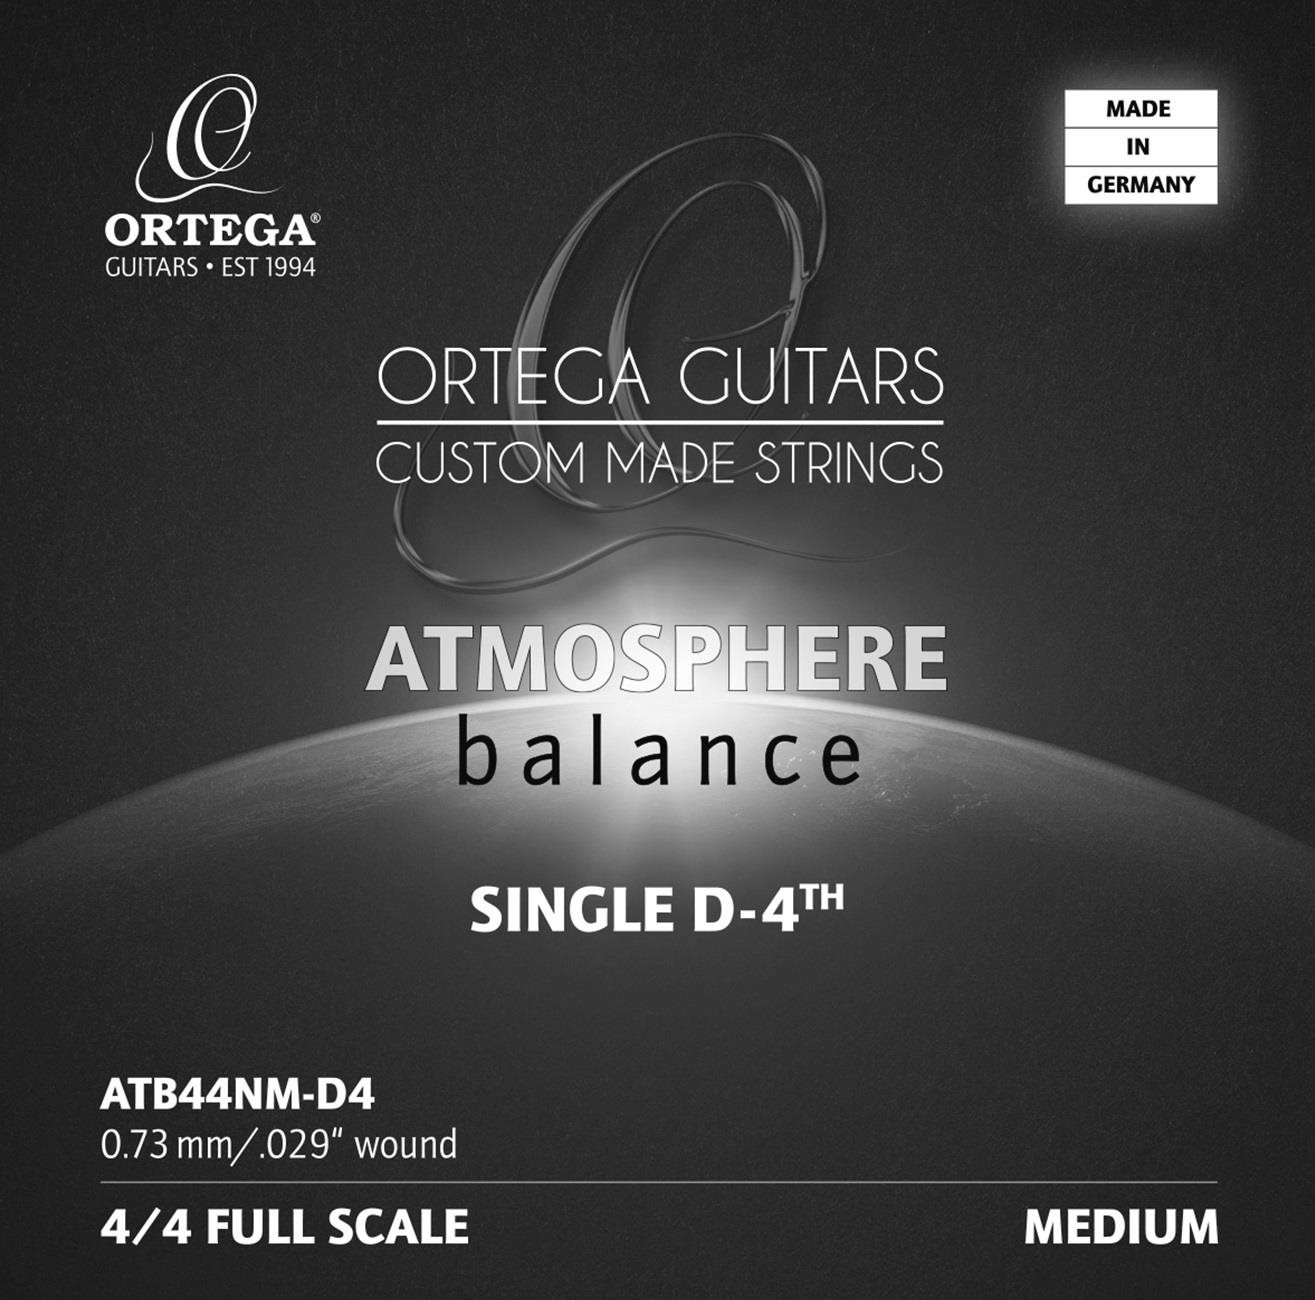 ORTEGA ATB44NM-D4